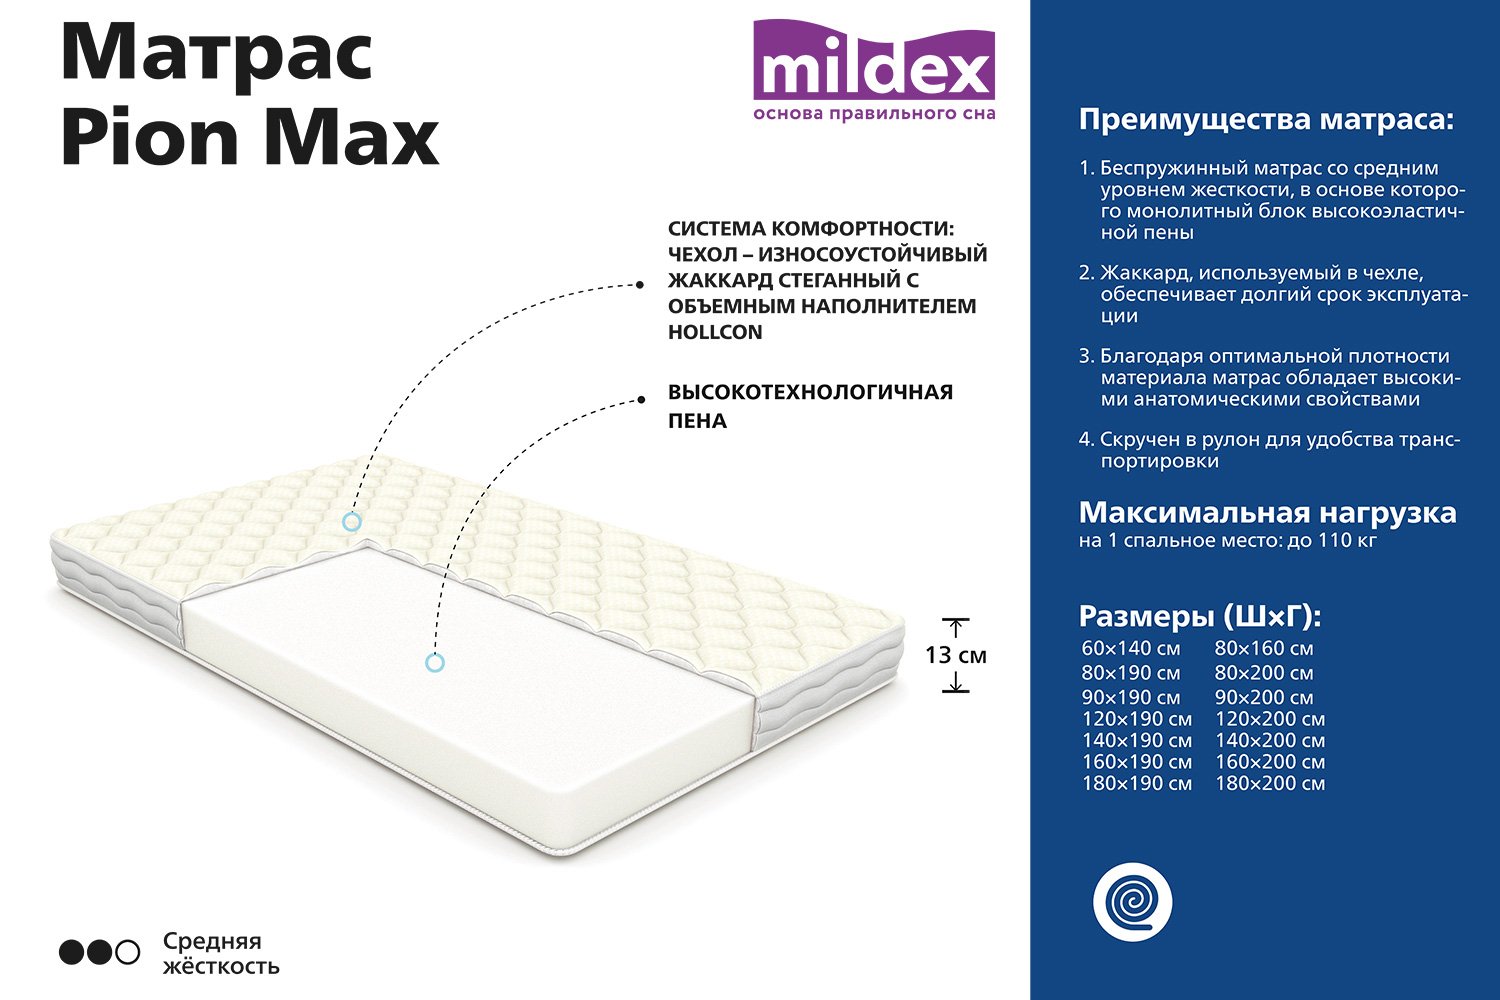 Матрас Mildex pion Max 140x200